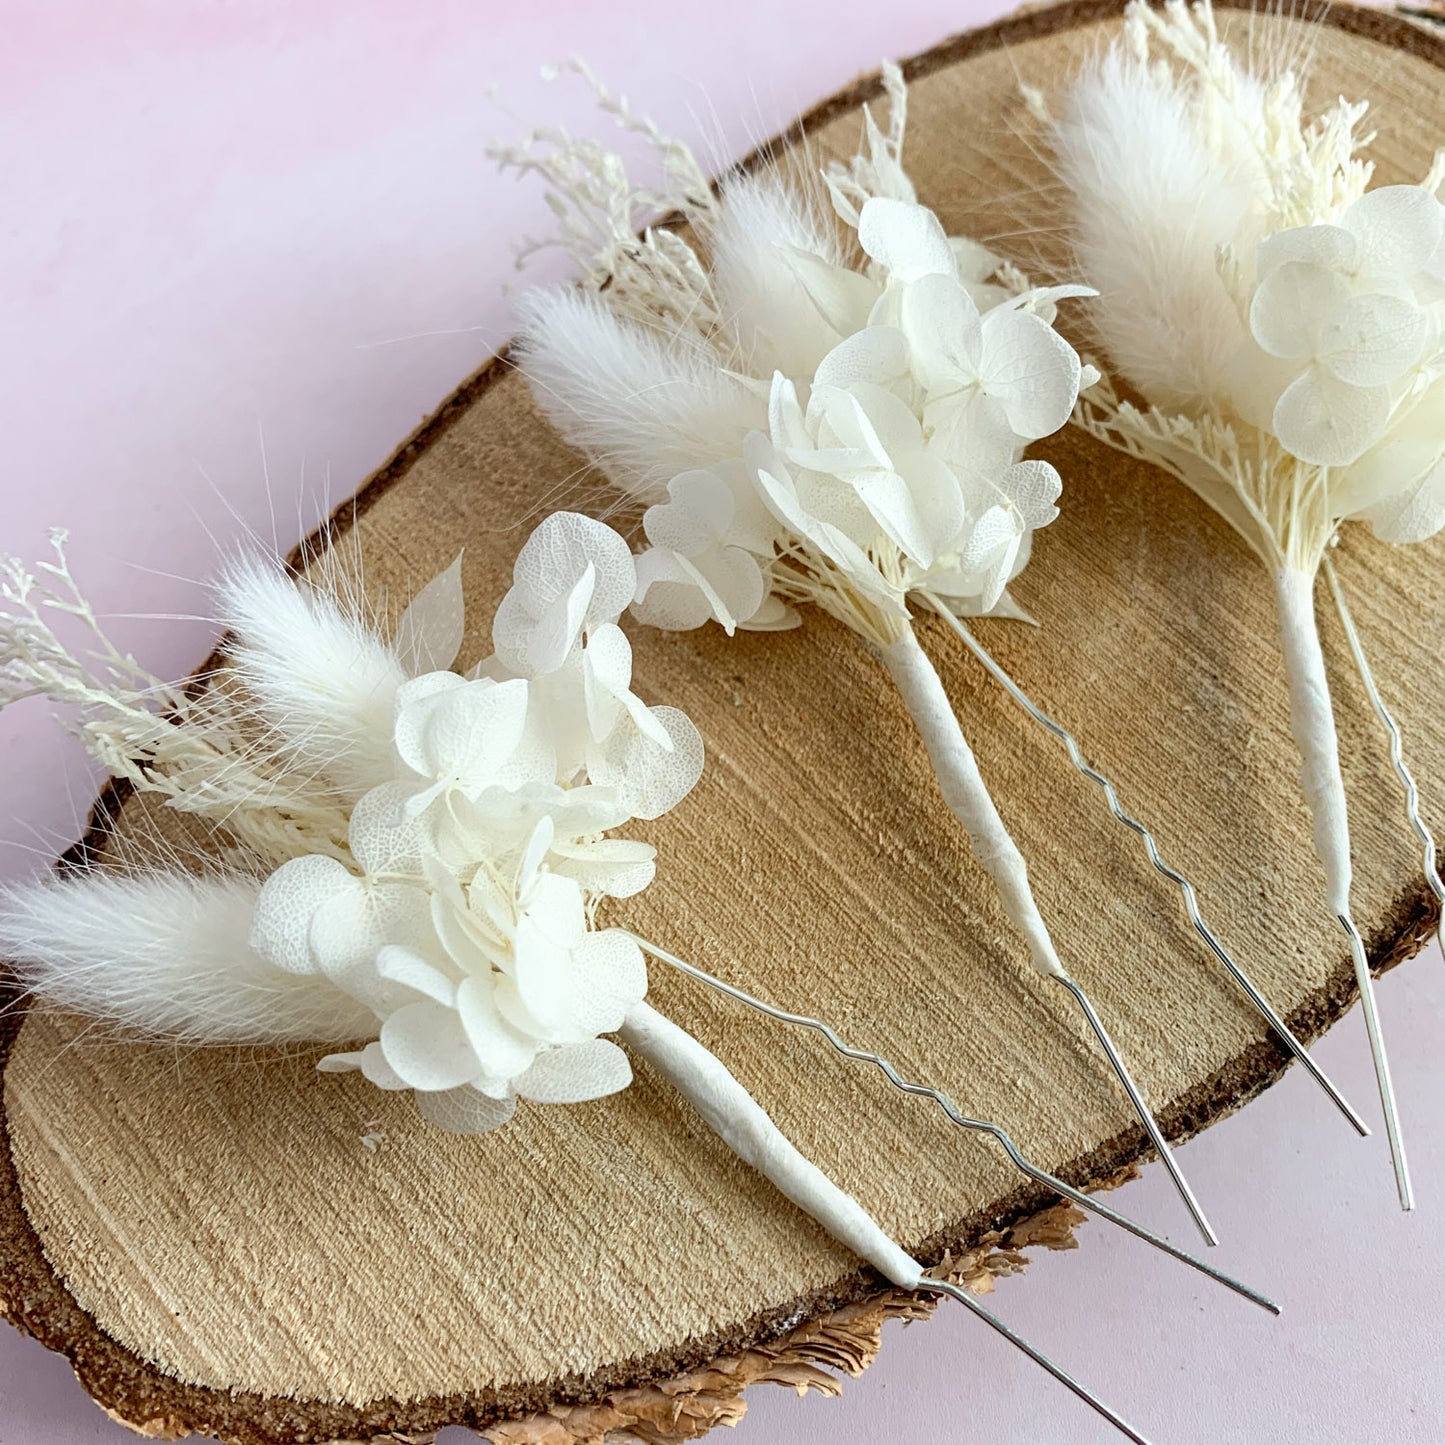 White dried flower hair pins